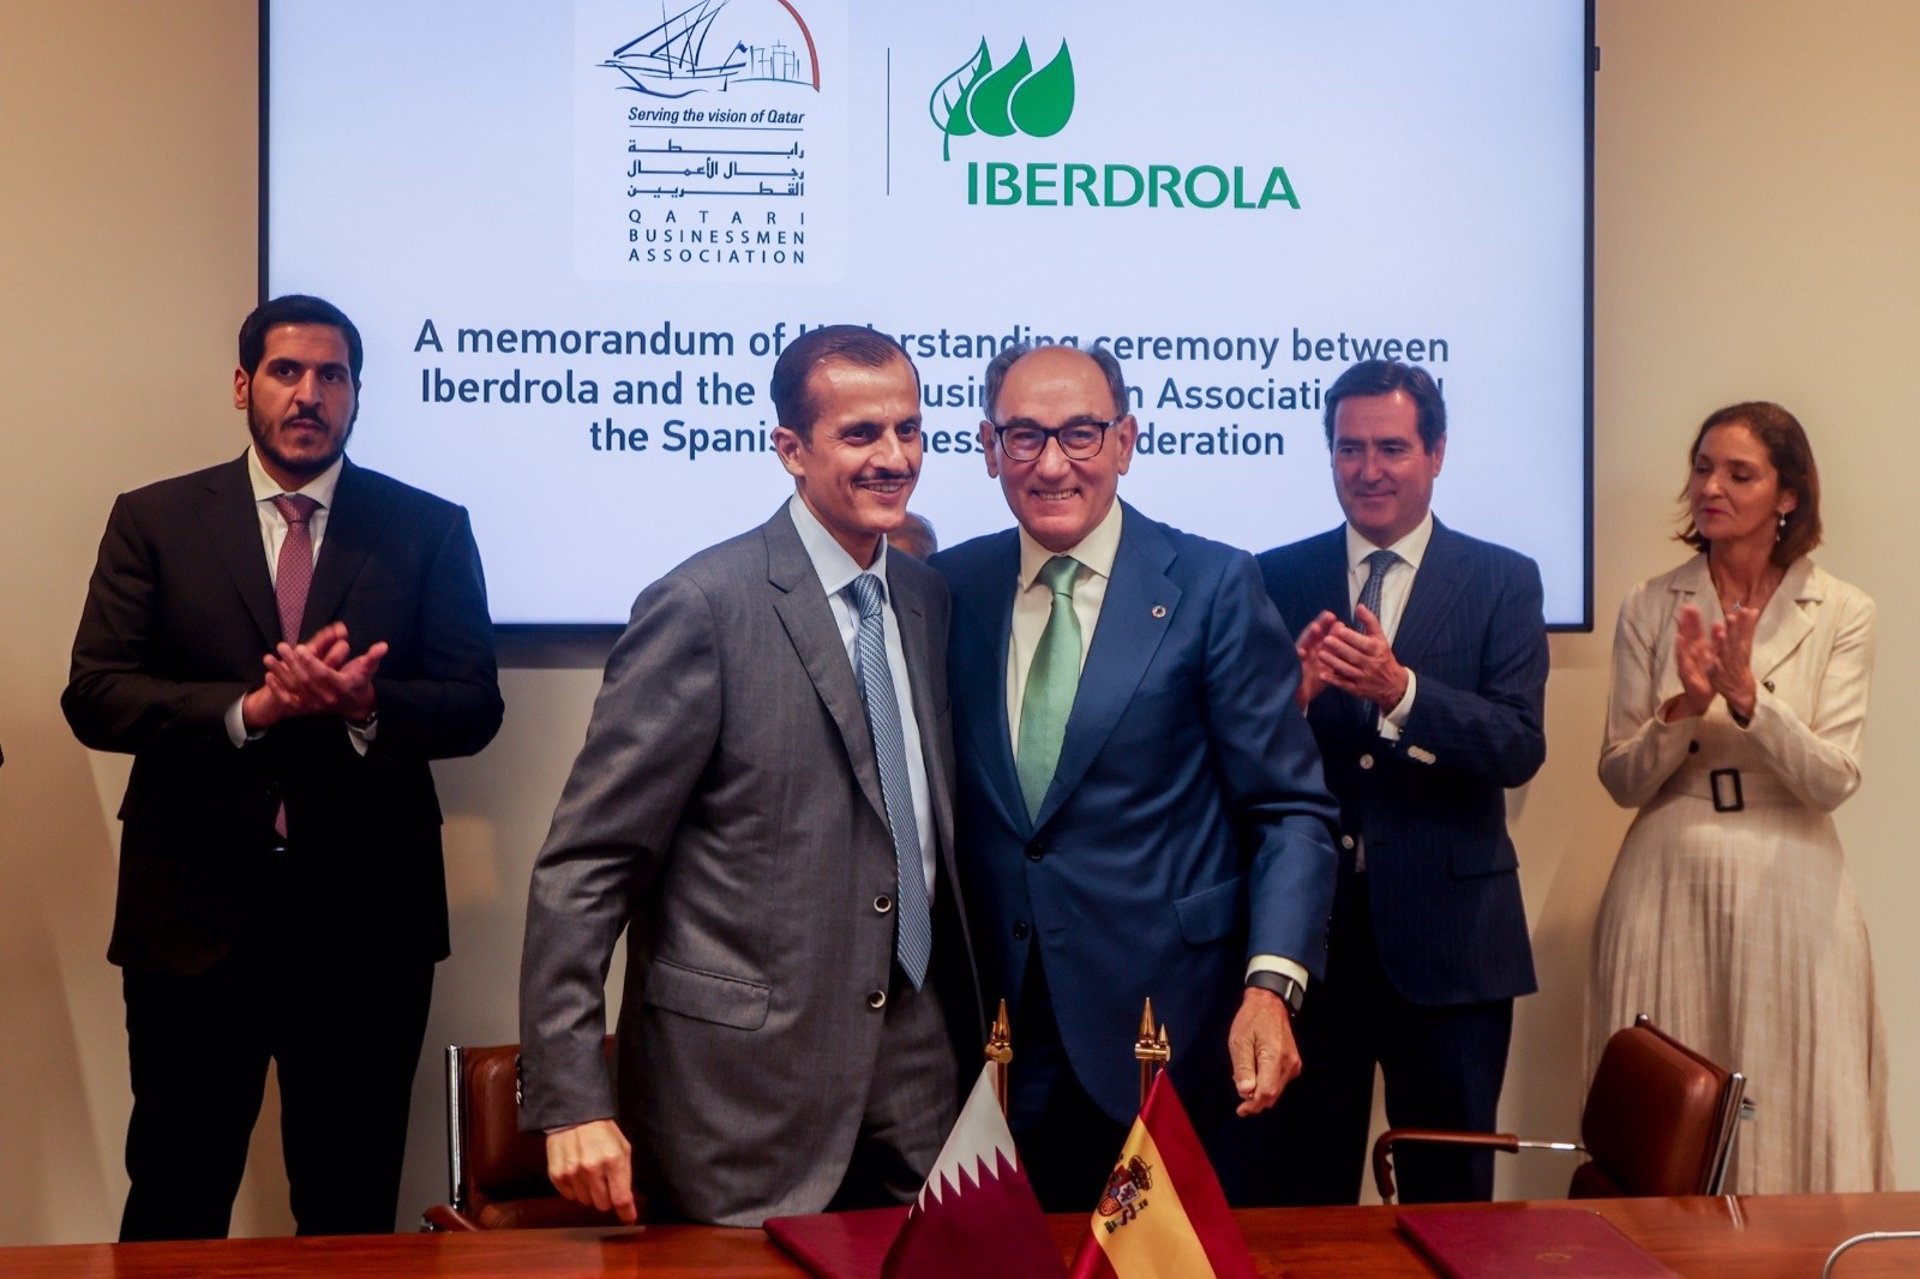 Iberdrola y Qatar firman un acuerdo para fortalecer su alianza estratégica en el centro de innovación de Doha